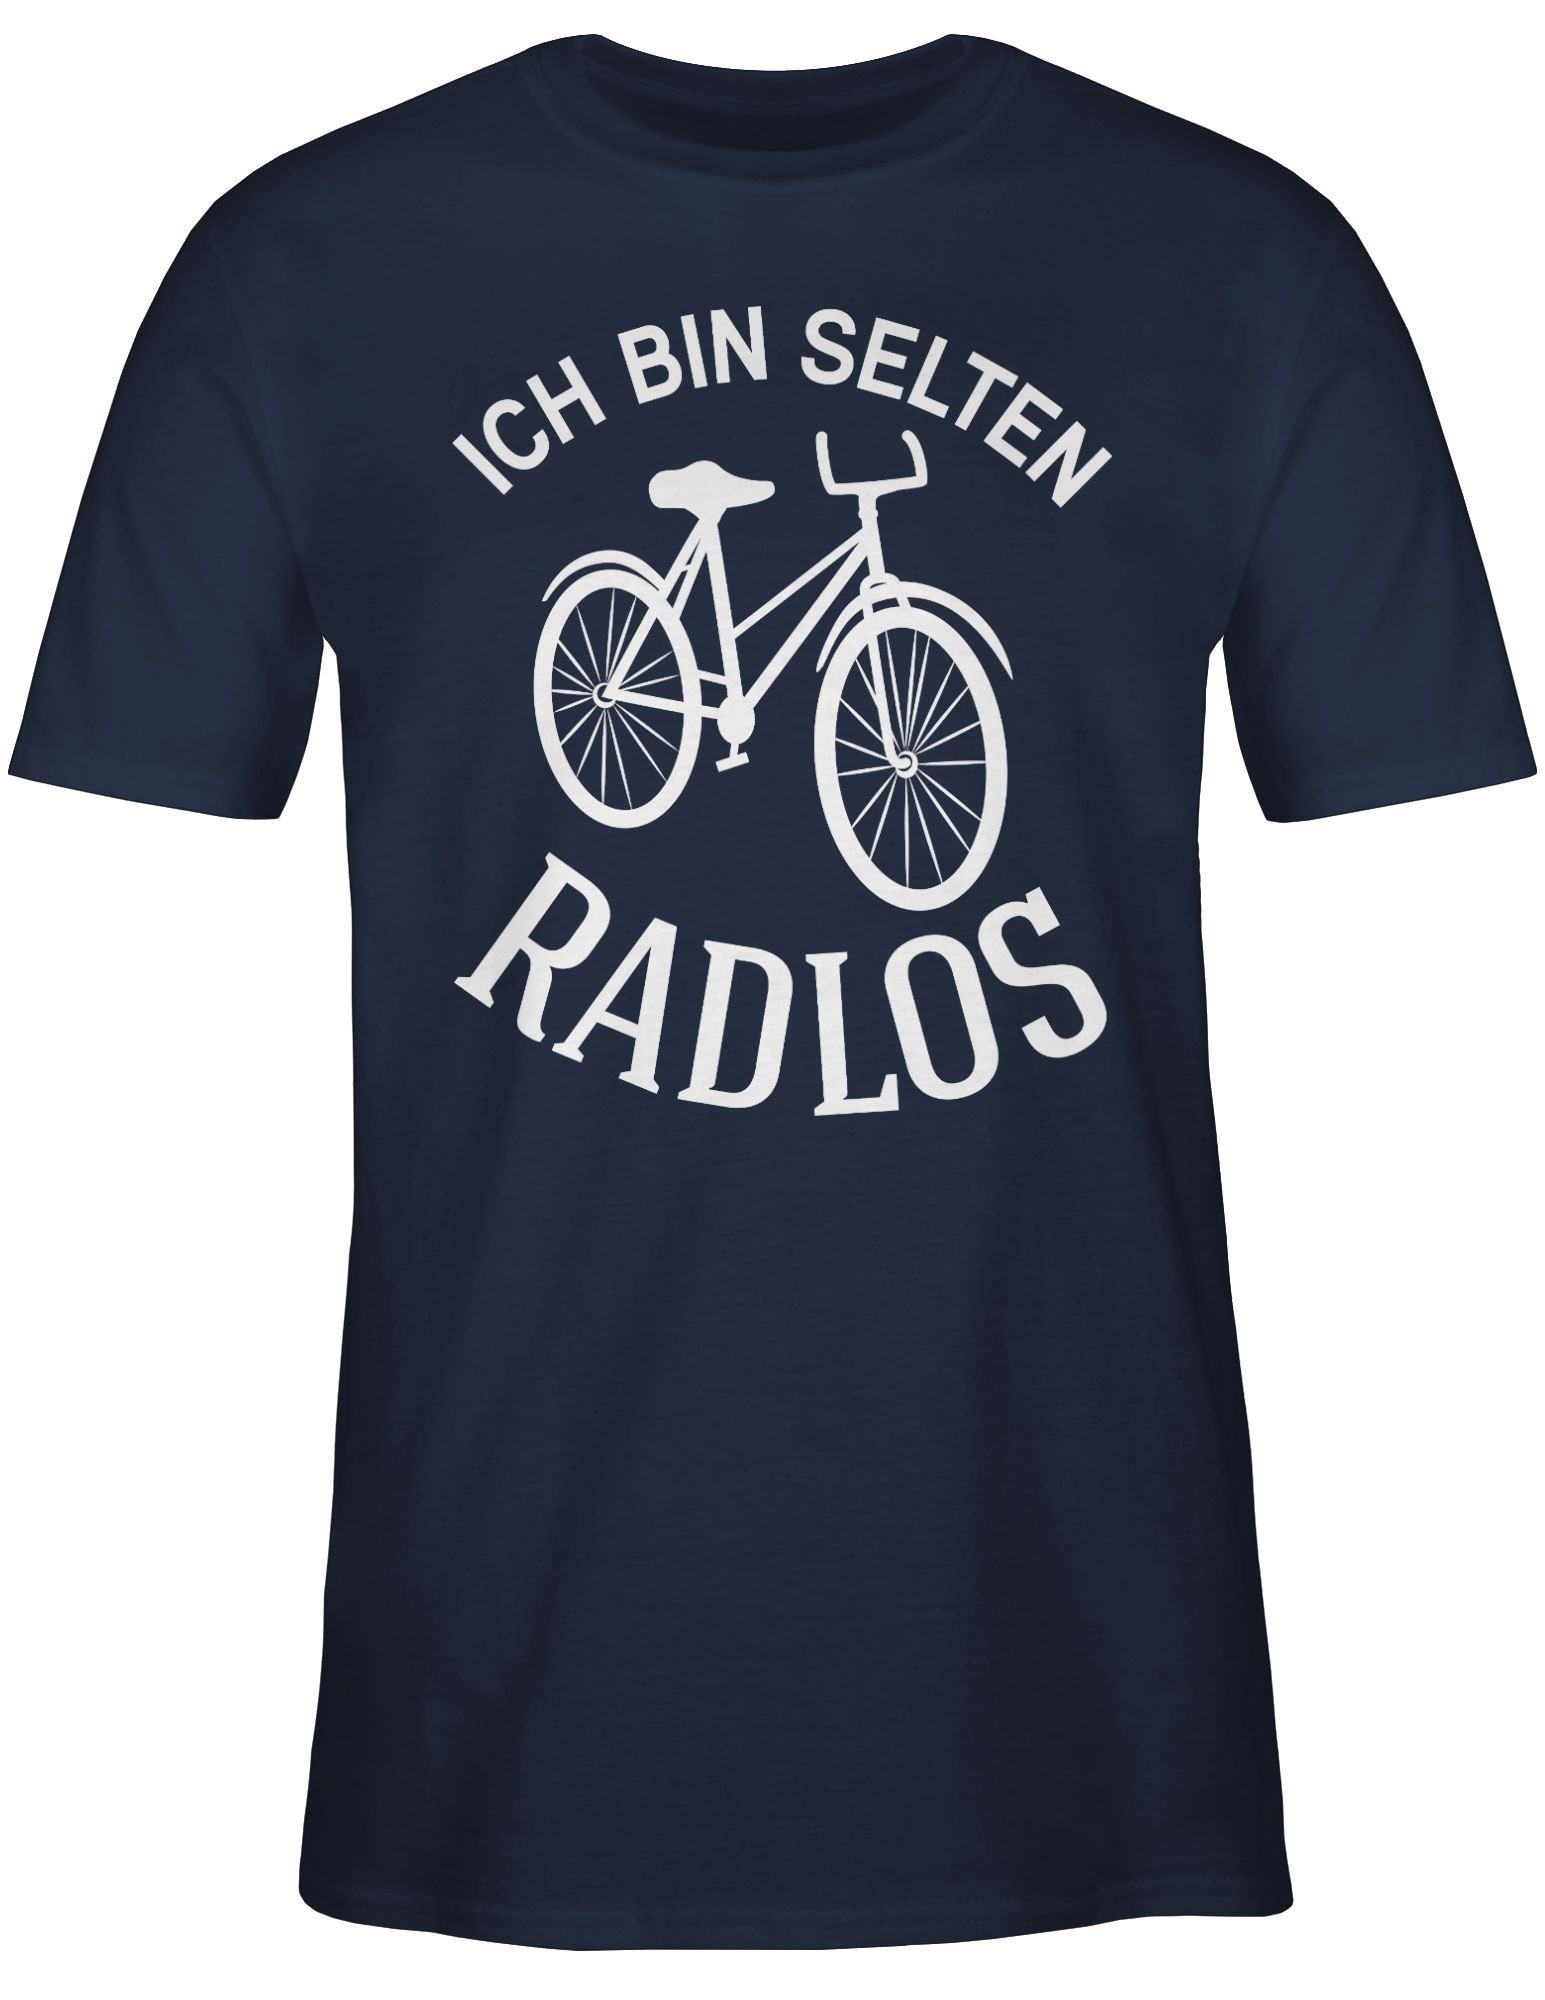 Shirtracer T-Shirt Ich bin selten Blau Sprüche Statement 01 Radlos Navy